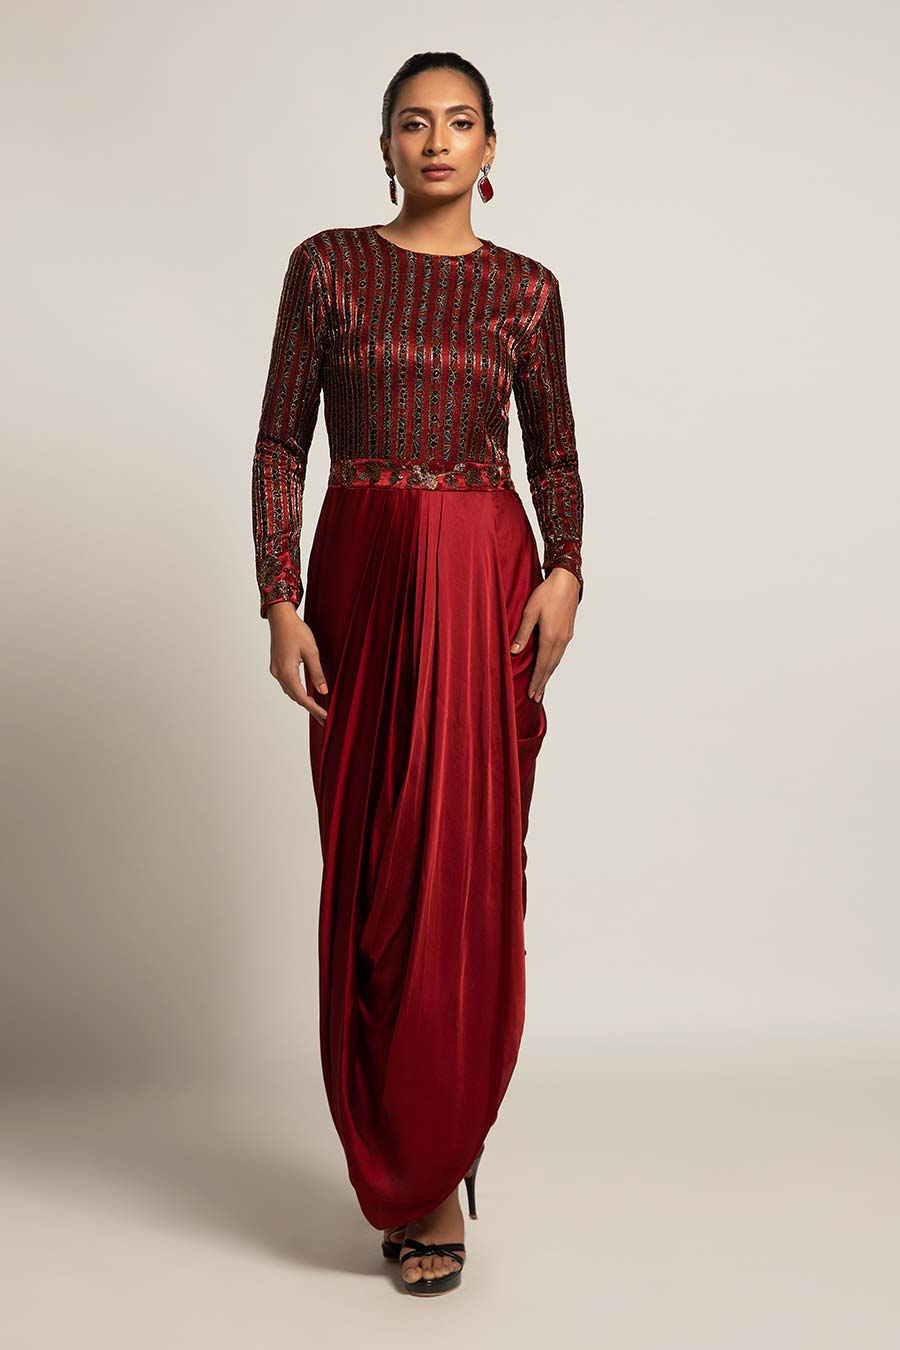 Designer Dresses For Women | Long Dresses for women – Sruti Dalmia